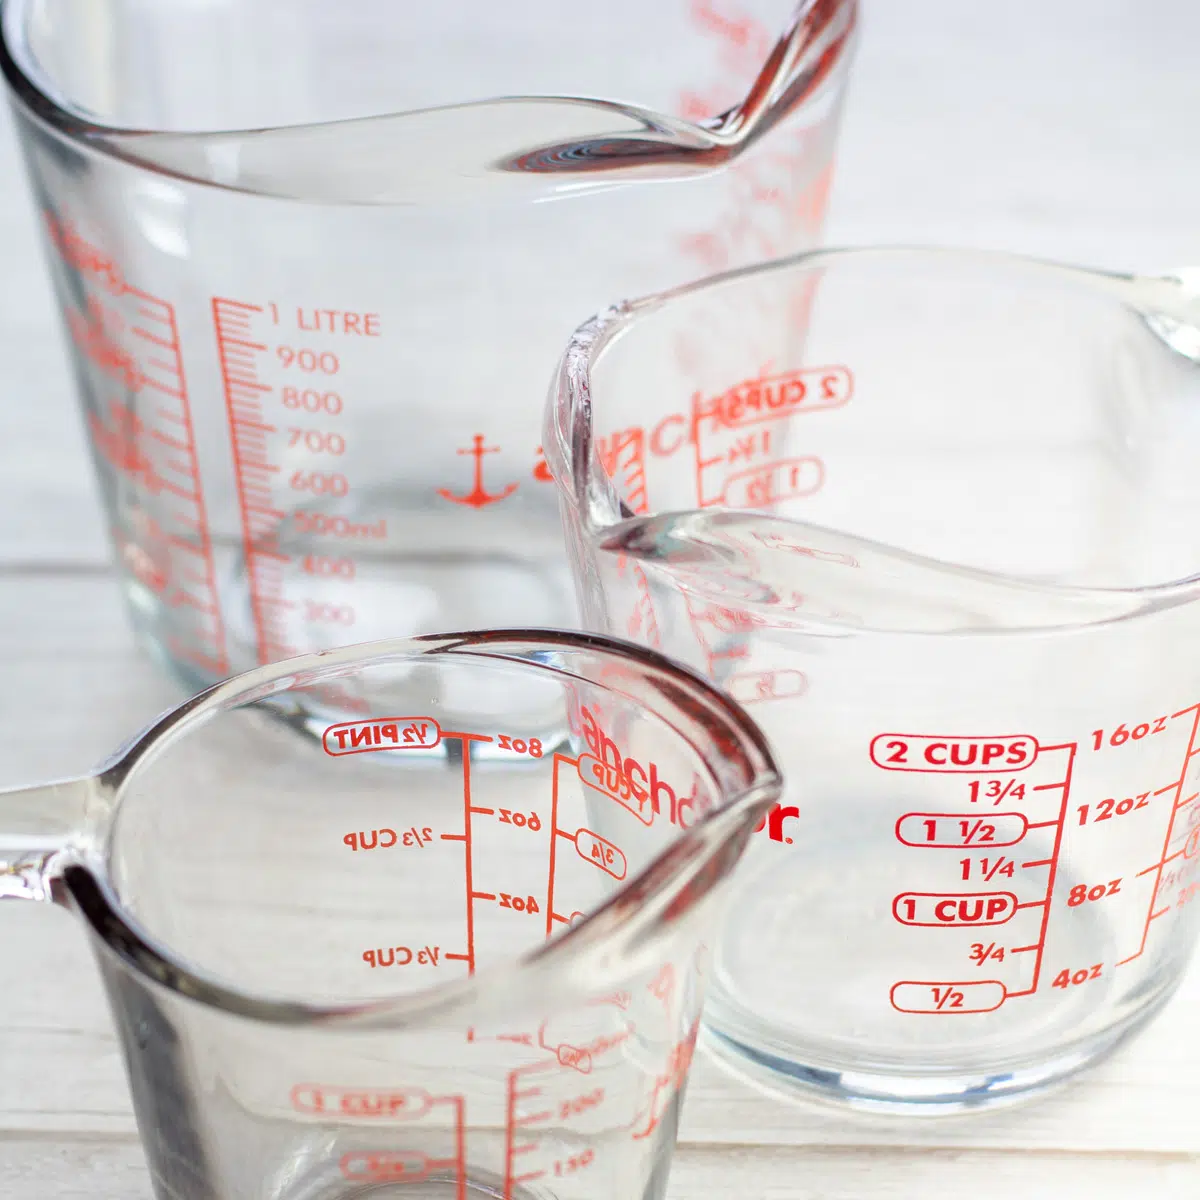 Beberapa gelas ukur berbagai macam untuk berapa banyak cangkir dalam panduan galon.